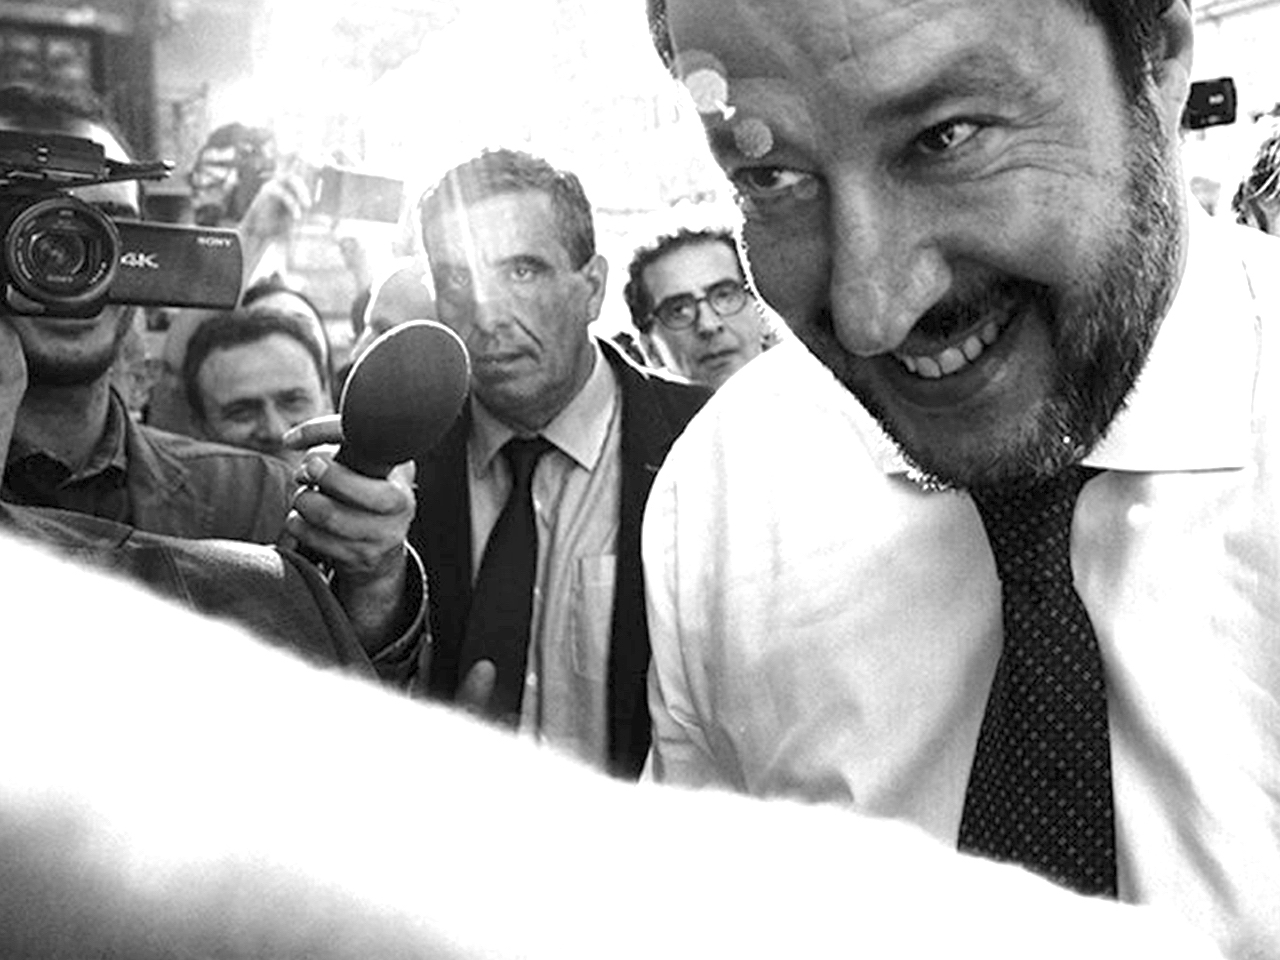 Benvenuti à Salviniland